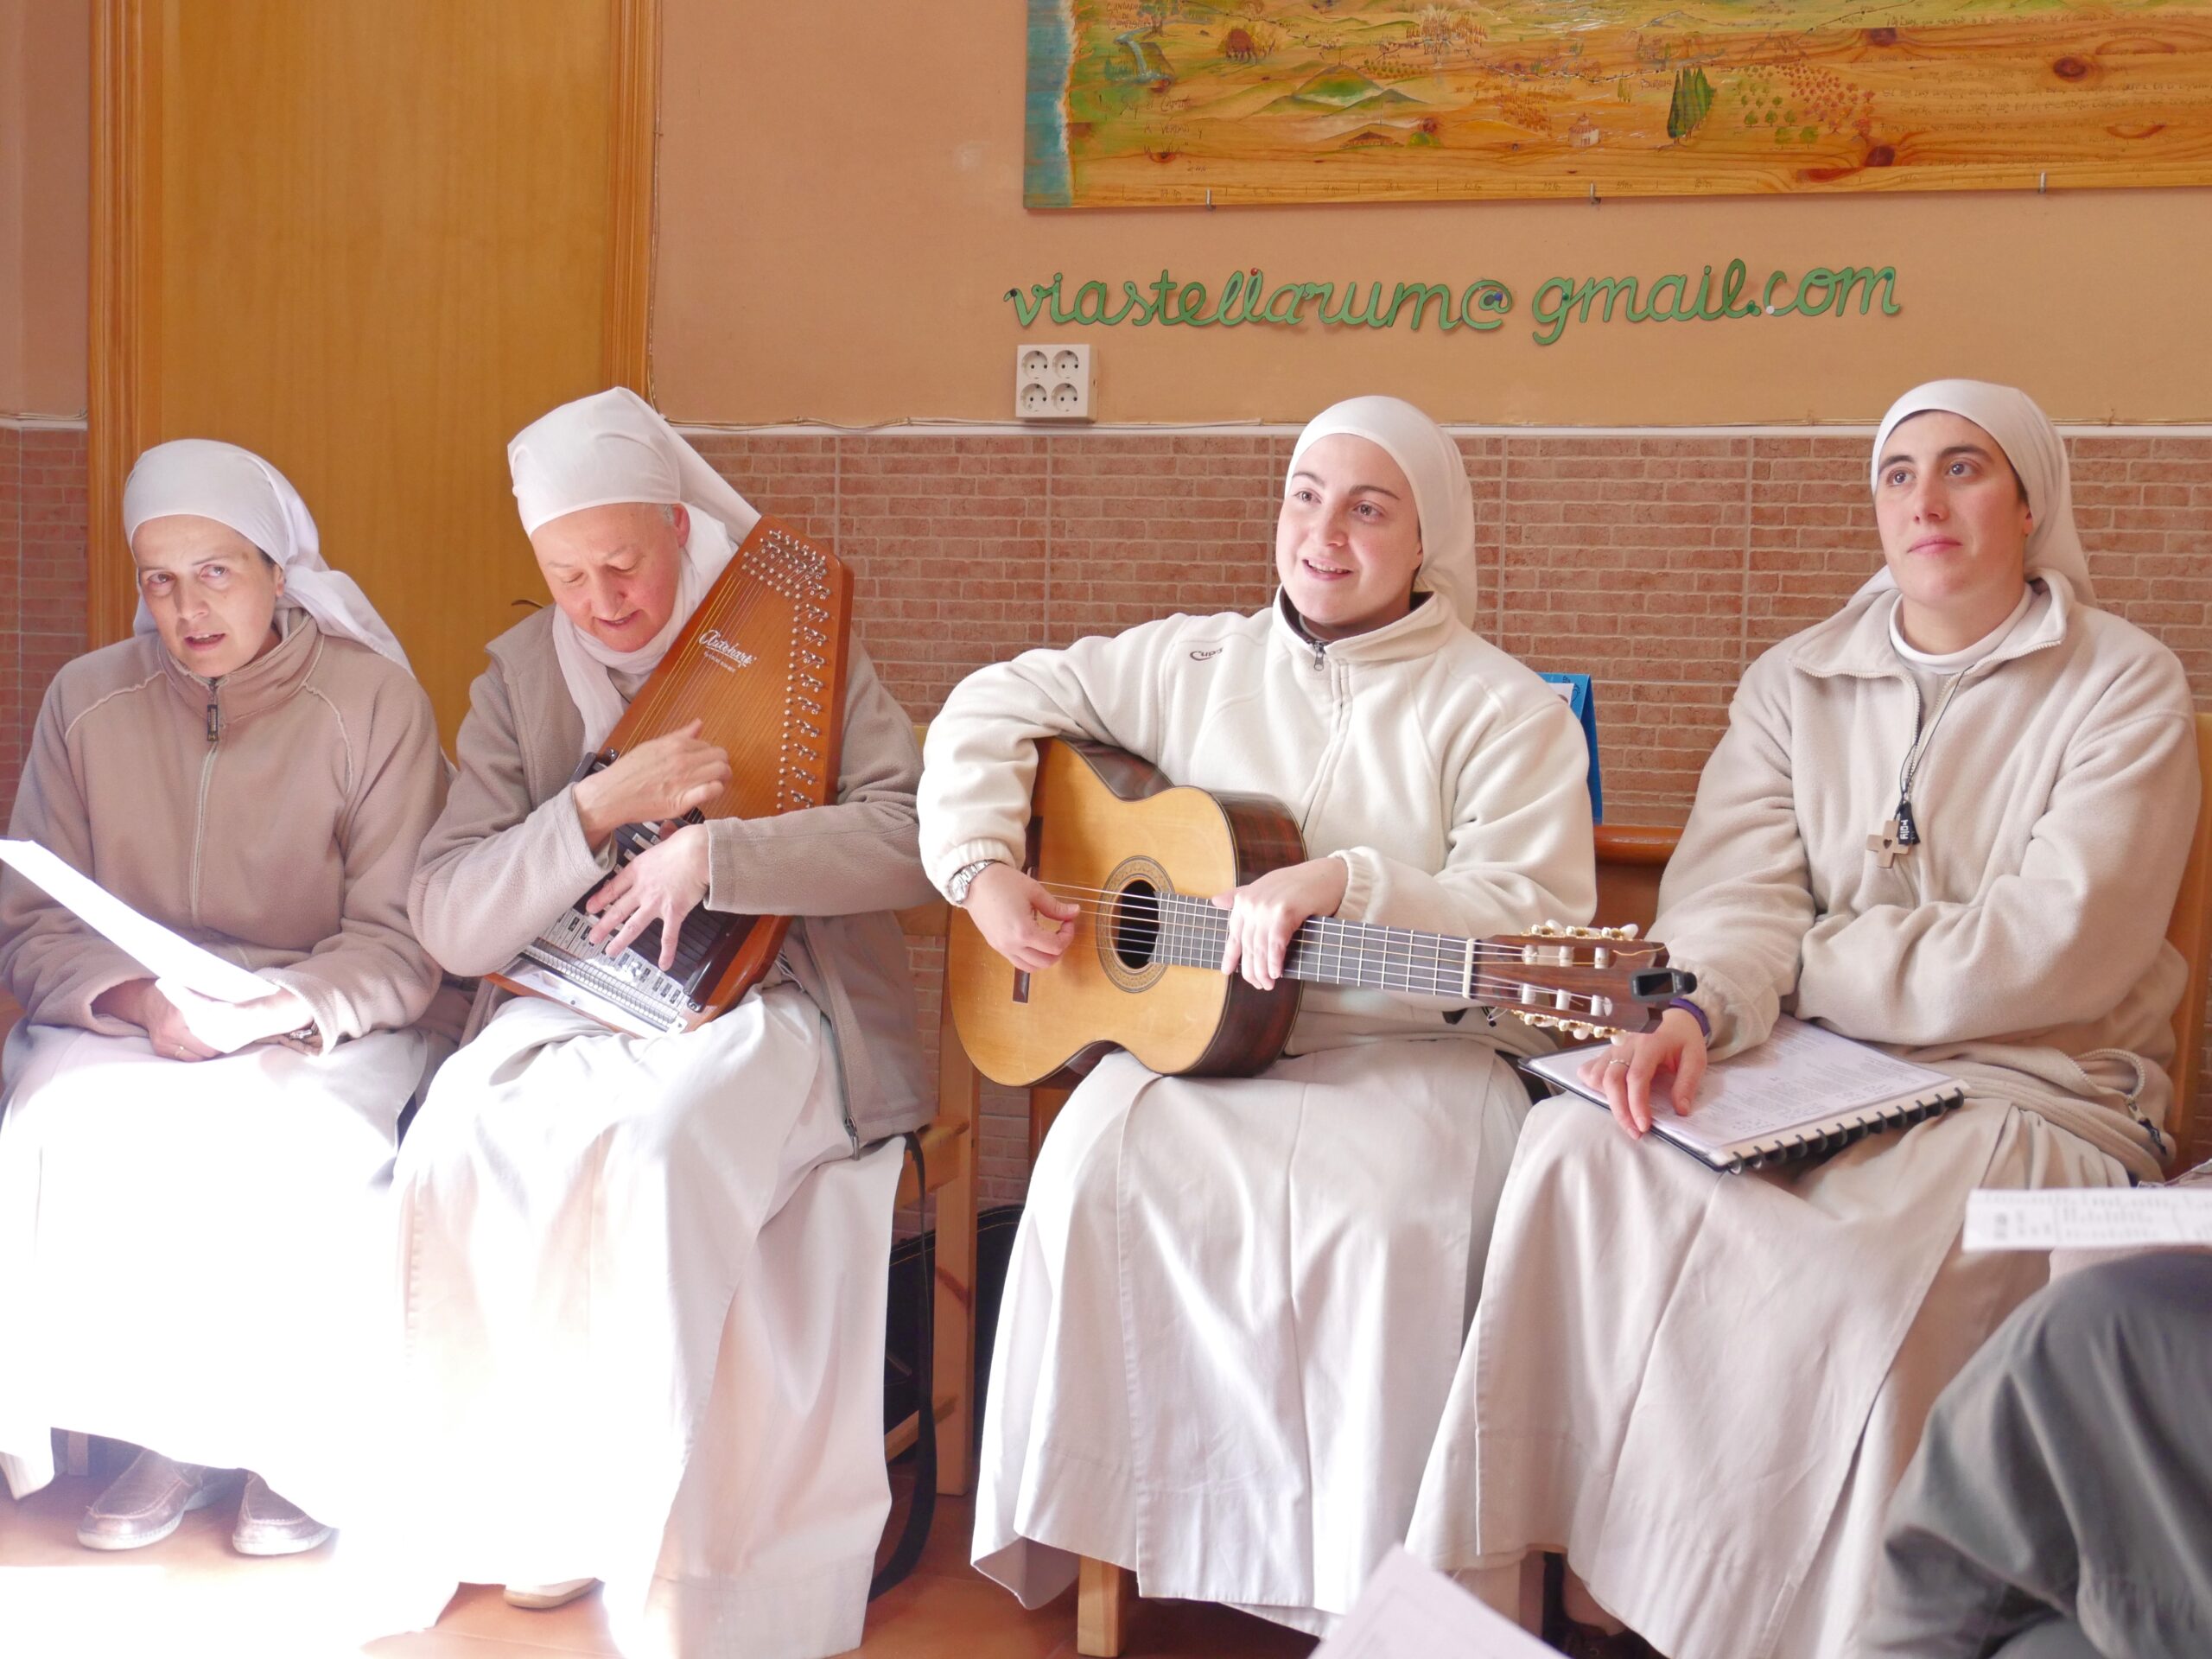 Four nuns sing in the entrance hall of the albergue in Carrión de los Condes, Spain.